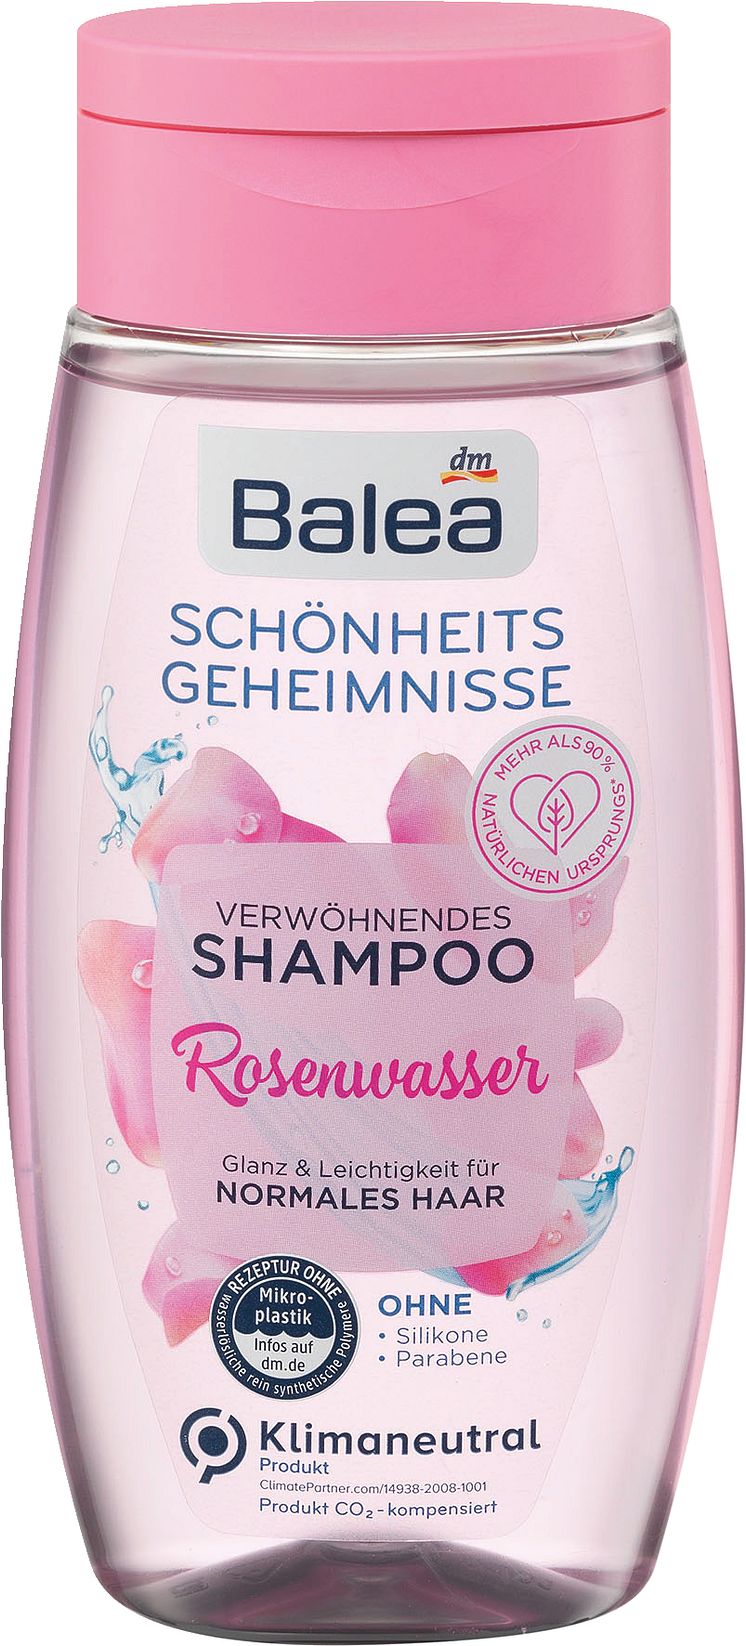 Balea Shampoo Rosenwasser